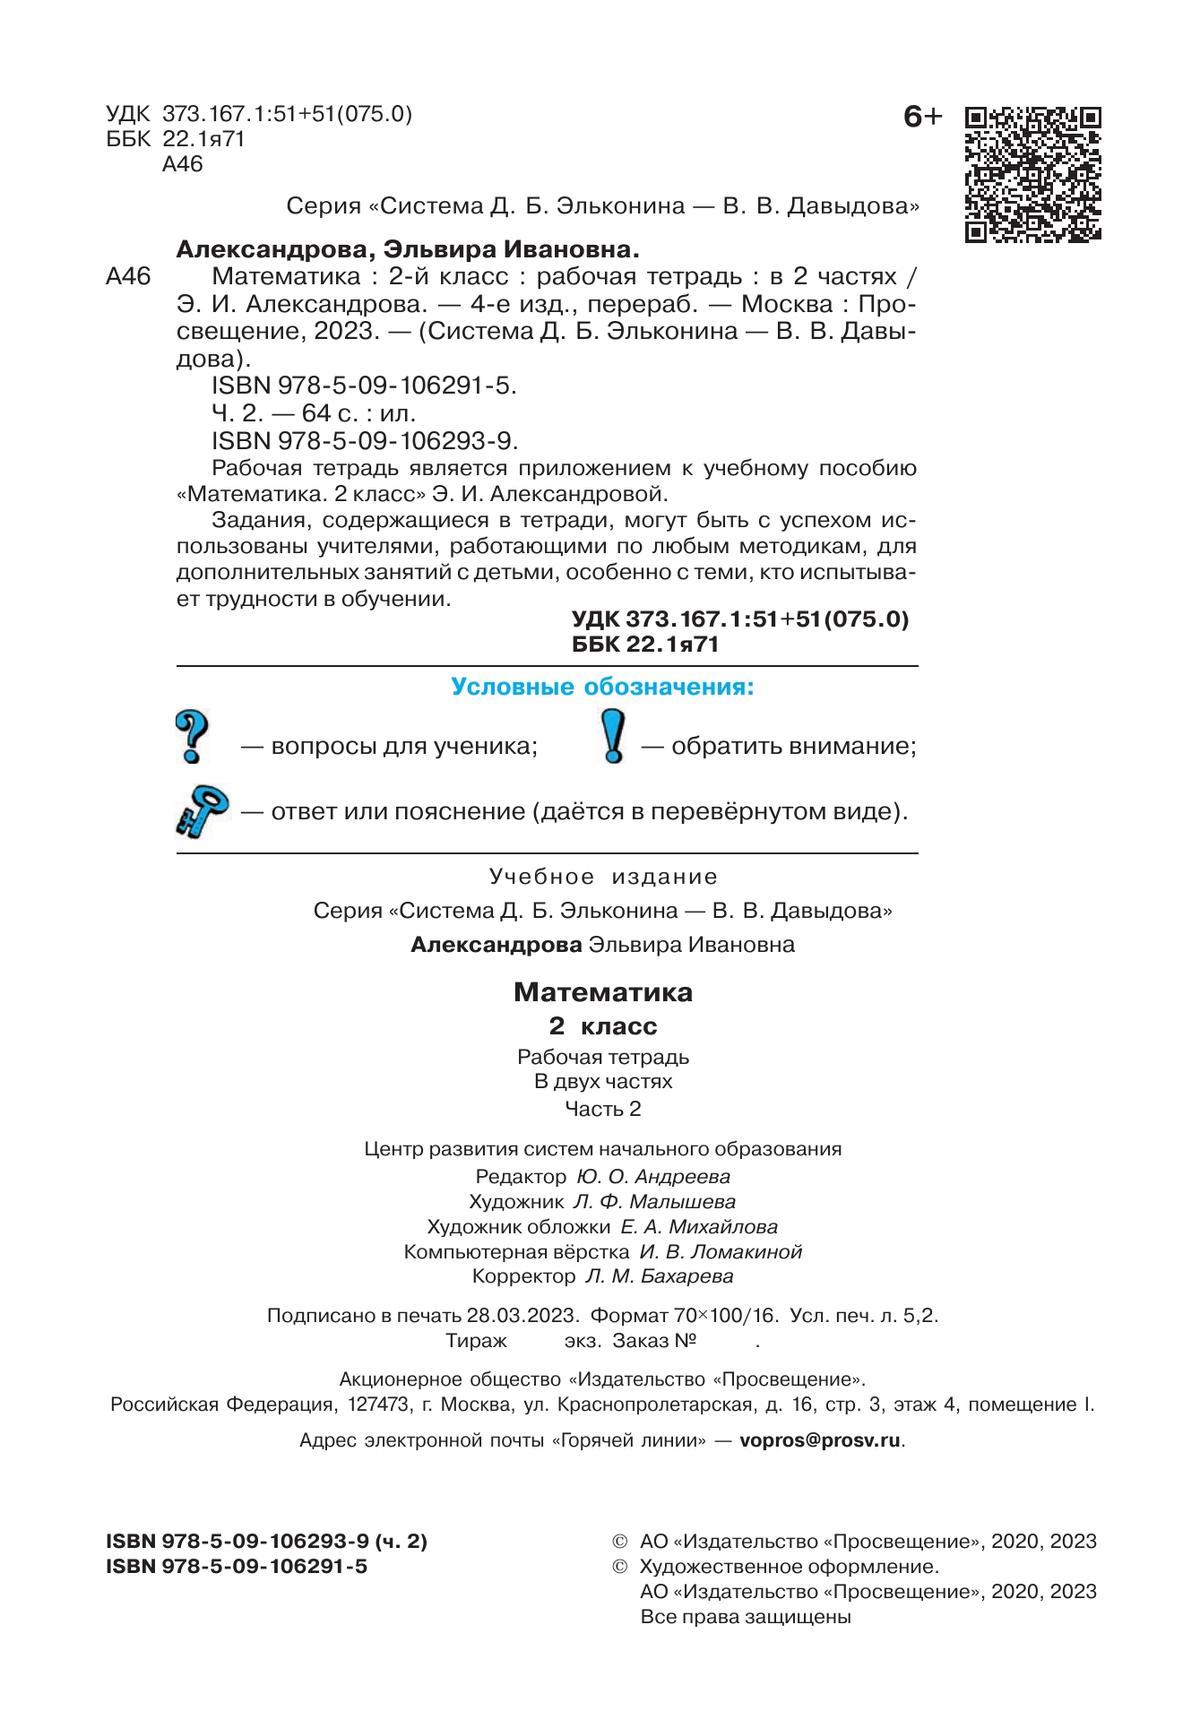 Рабочая тетрадь по математике №2. 2 класс Александрова Э.И. 7